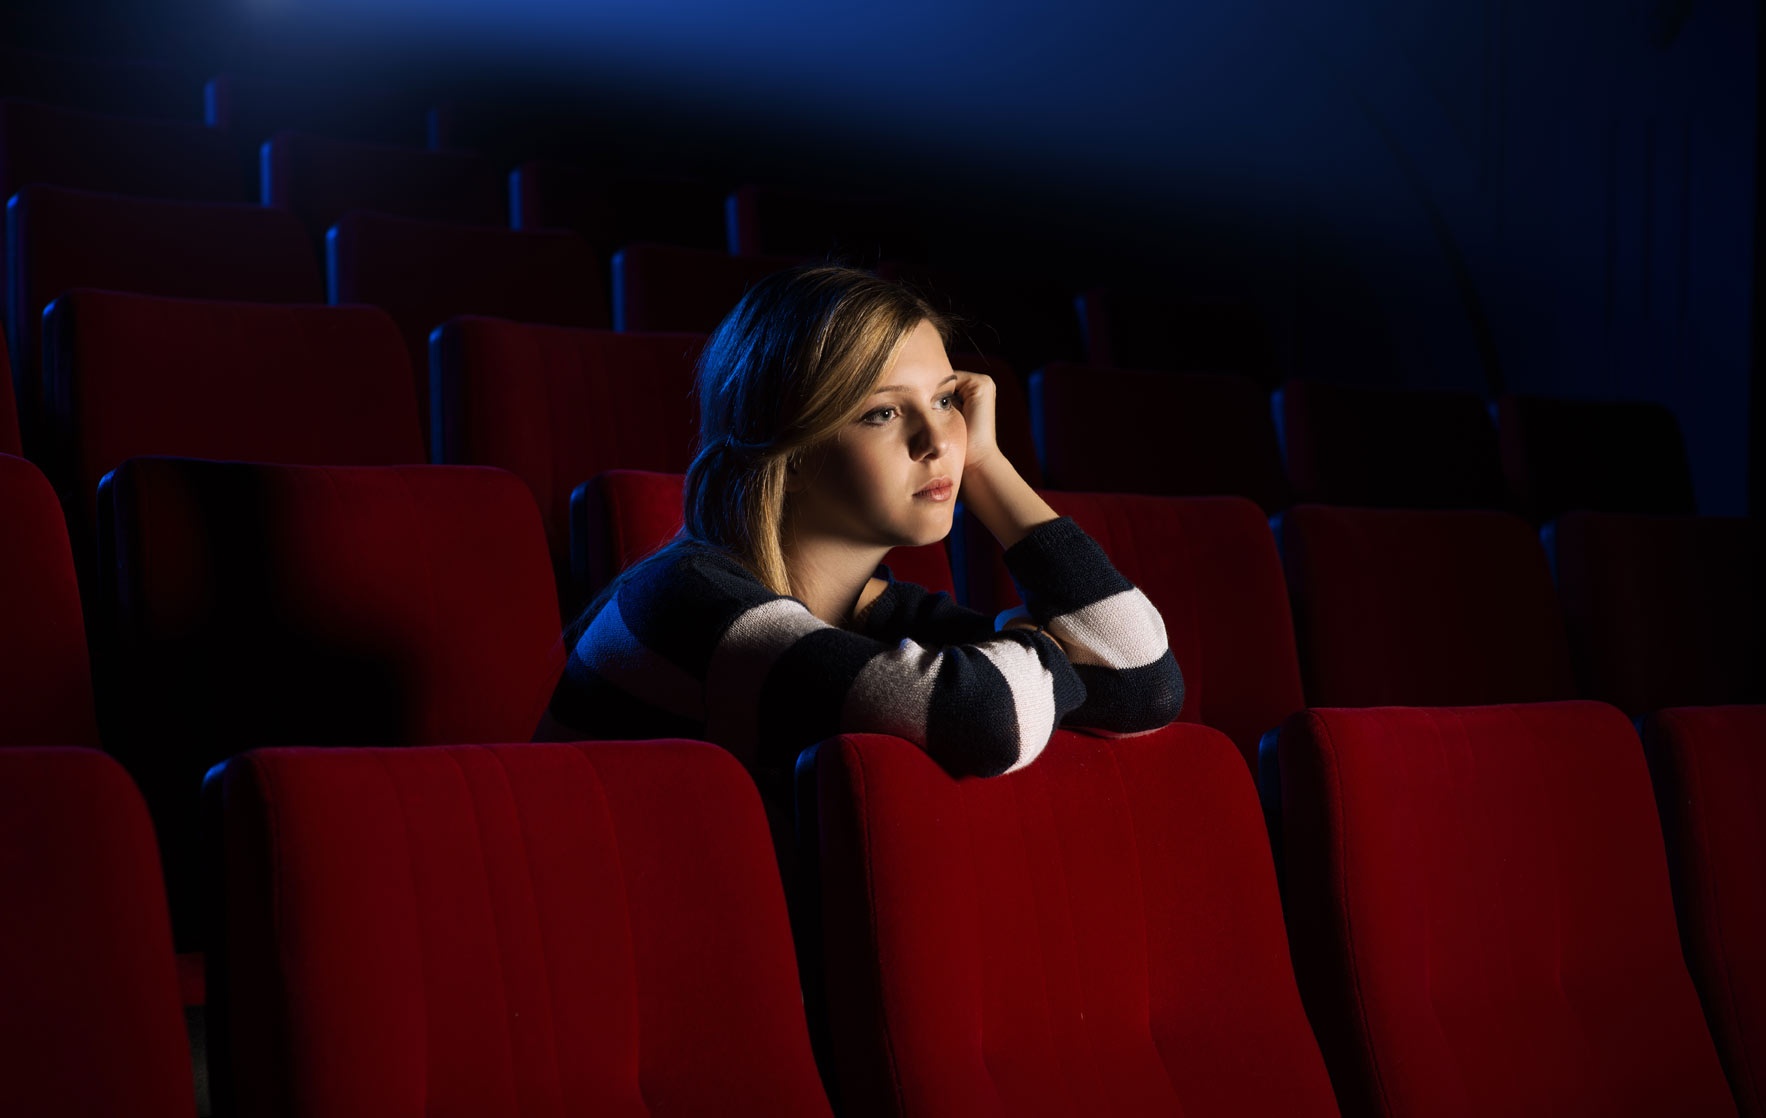 Kinobesucher in Österreich - Rückgang um 14,8% im Jahr 2018 (erstes Halbjahr)